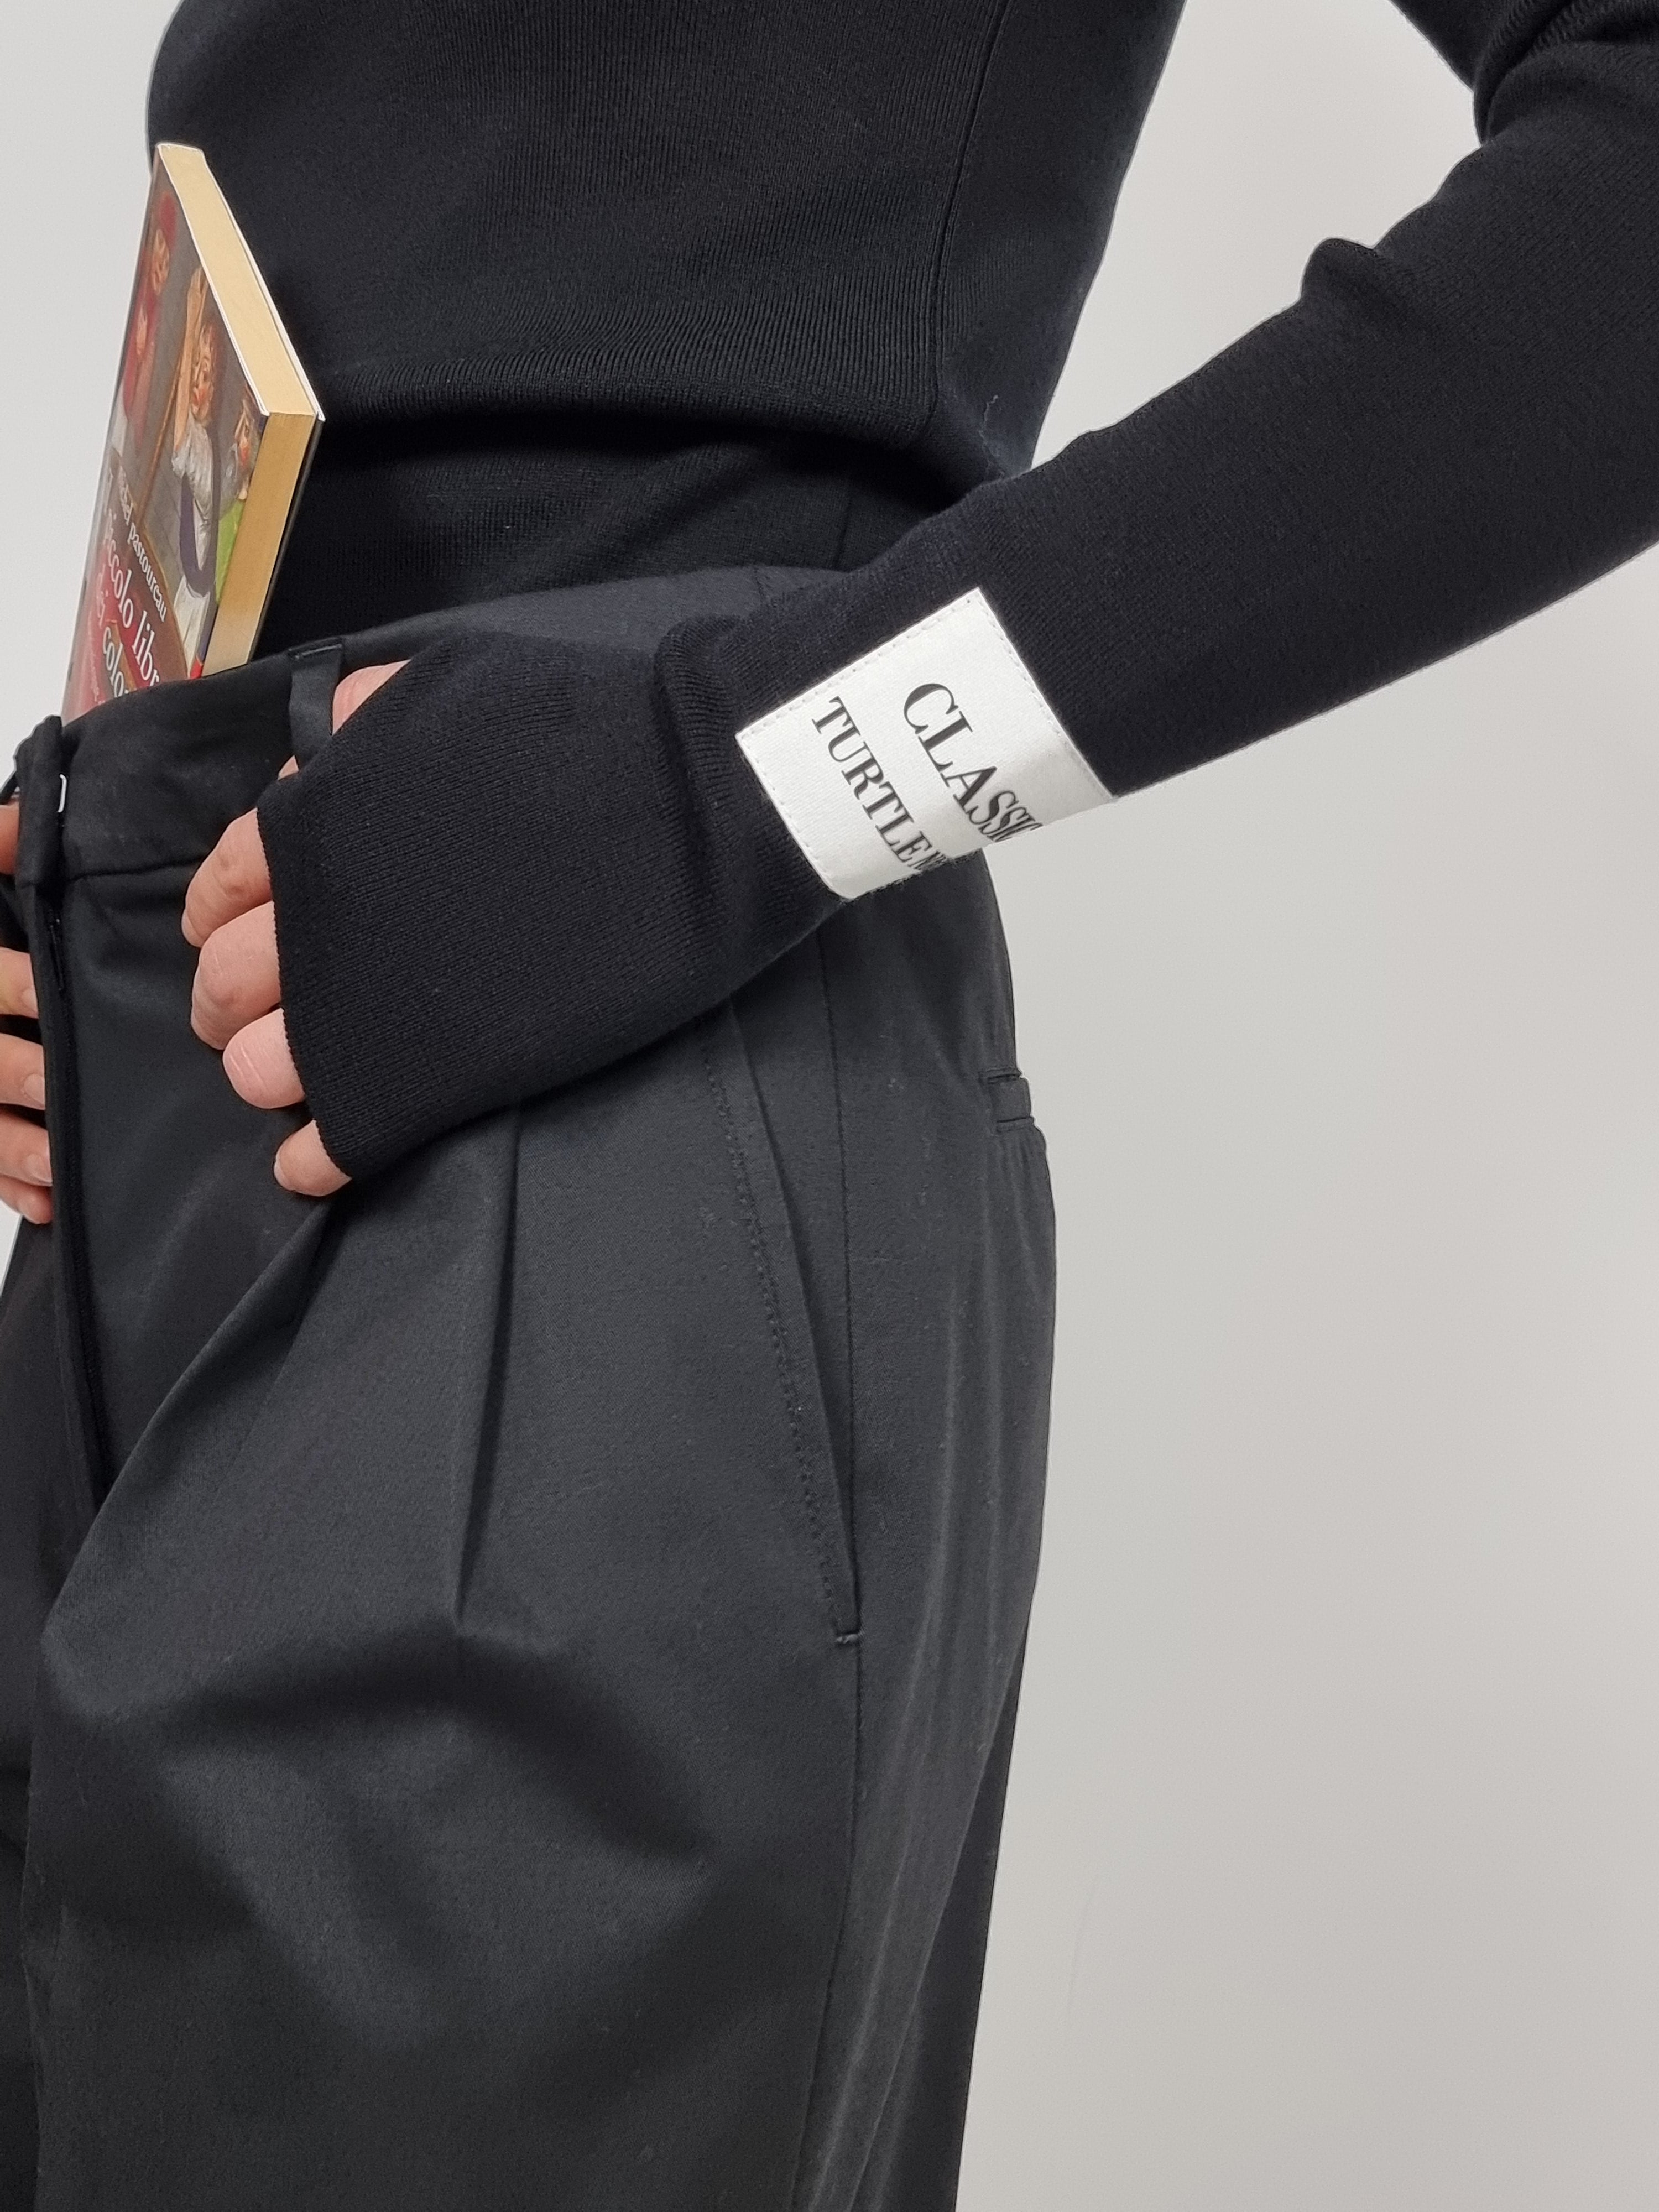 Moschino – Pantalone in tela di cotone stretch nero